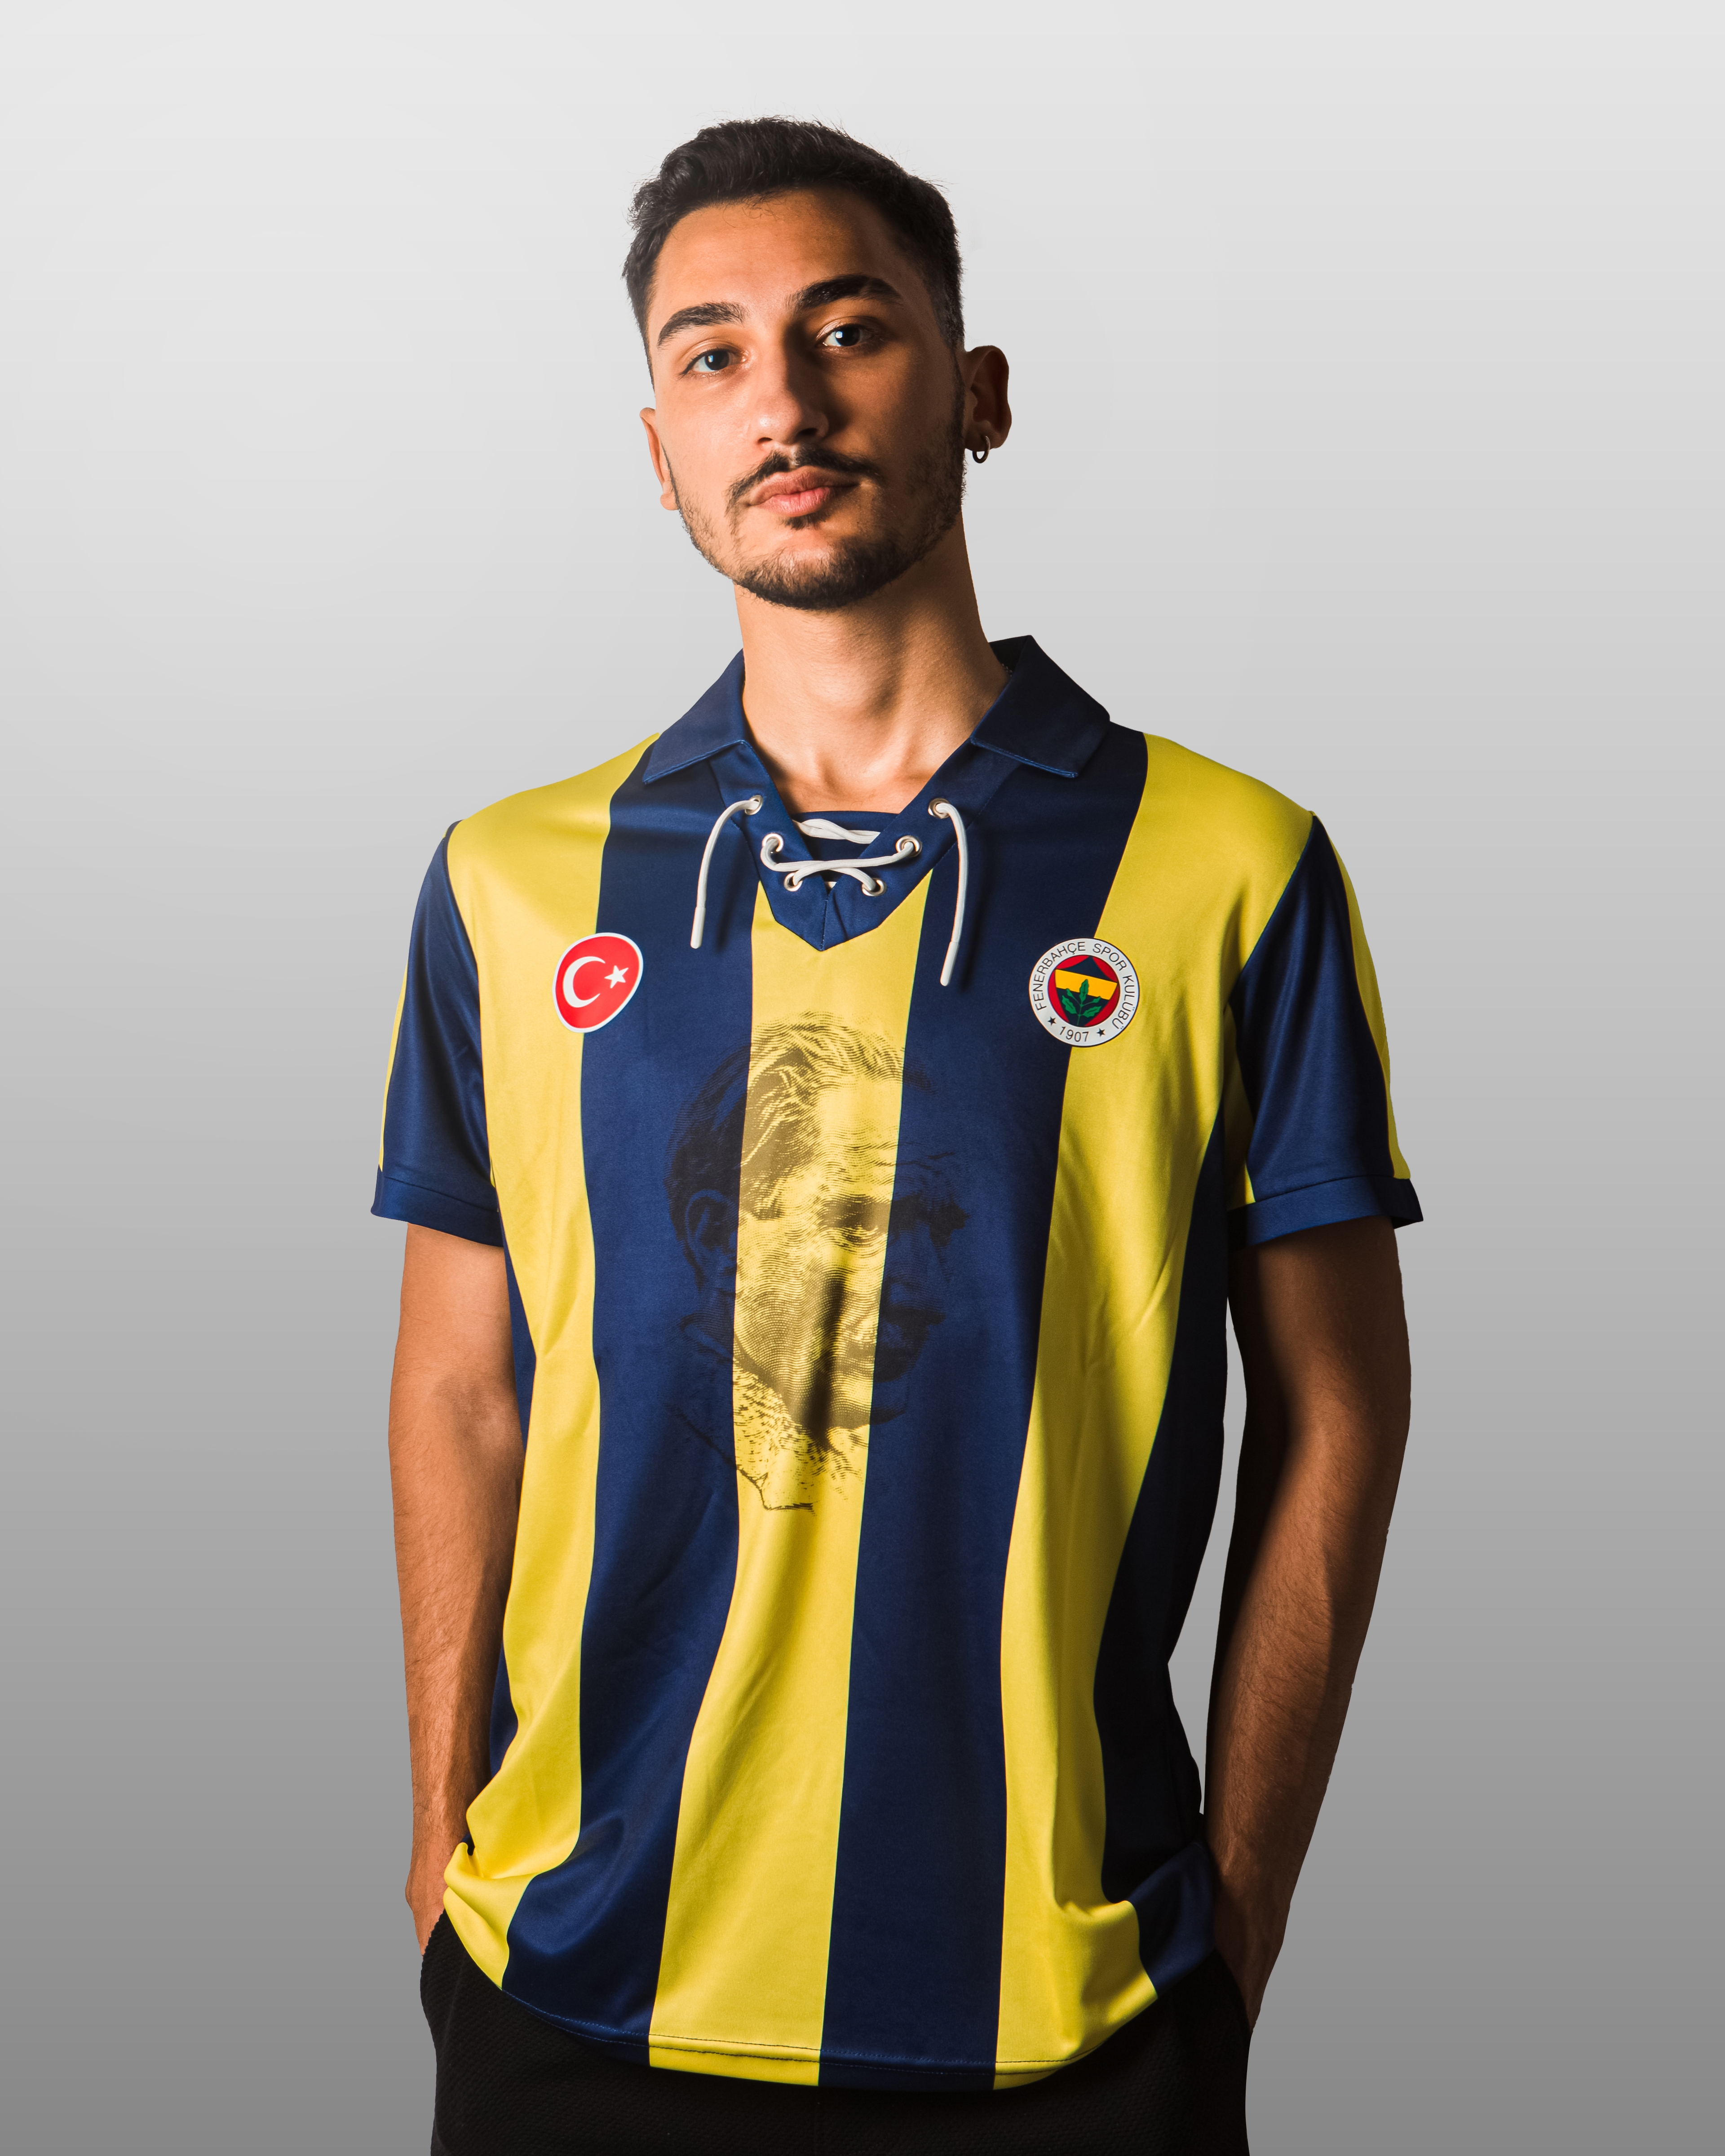 DAÜ'lü Genç, Fenerbahçe'nin 100. Yıl Forması Tasarımında Büyük Başarıya İmza Attı